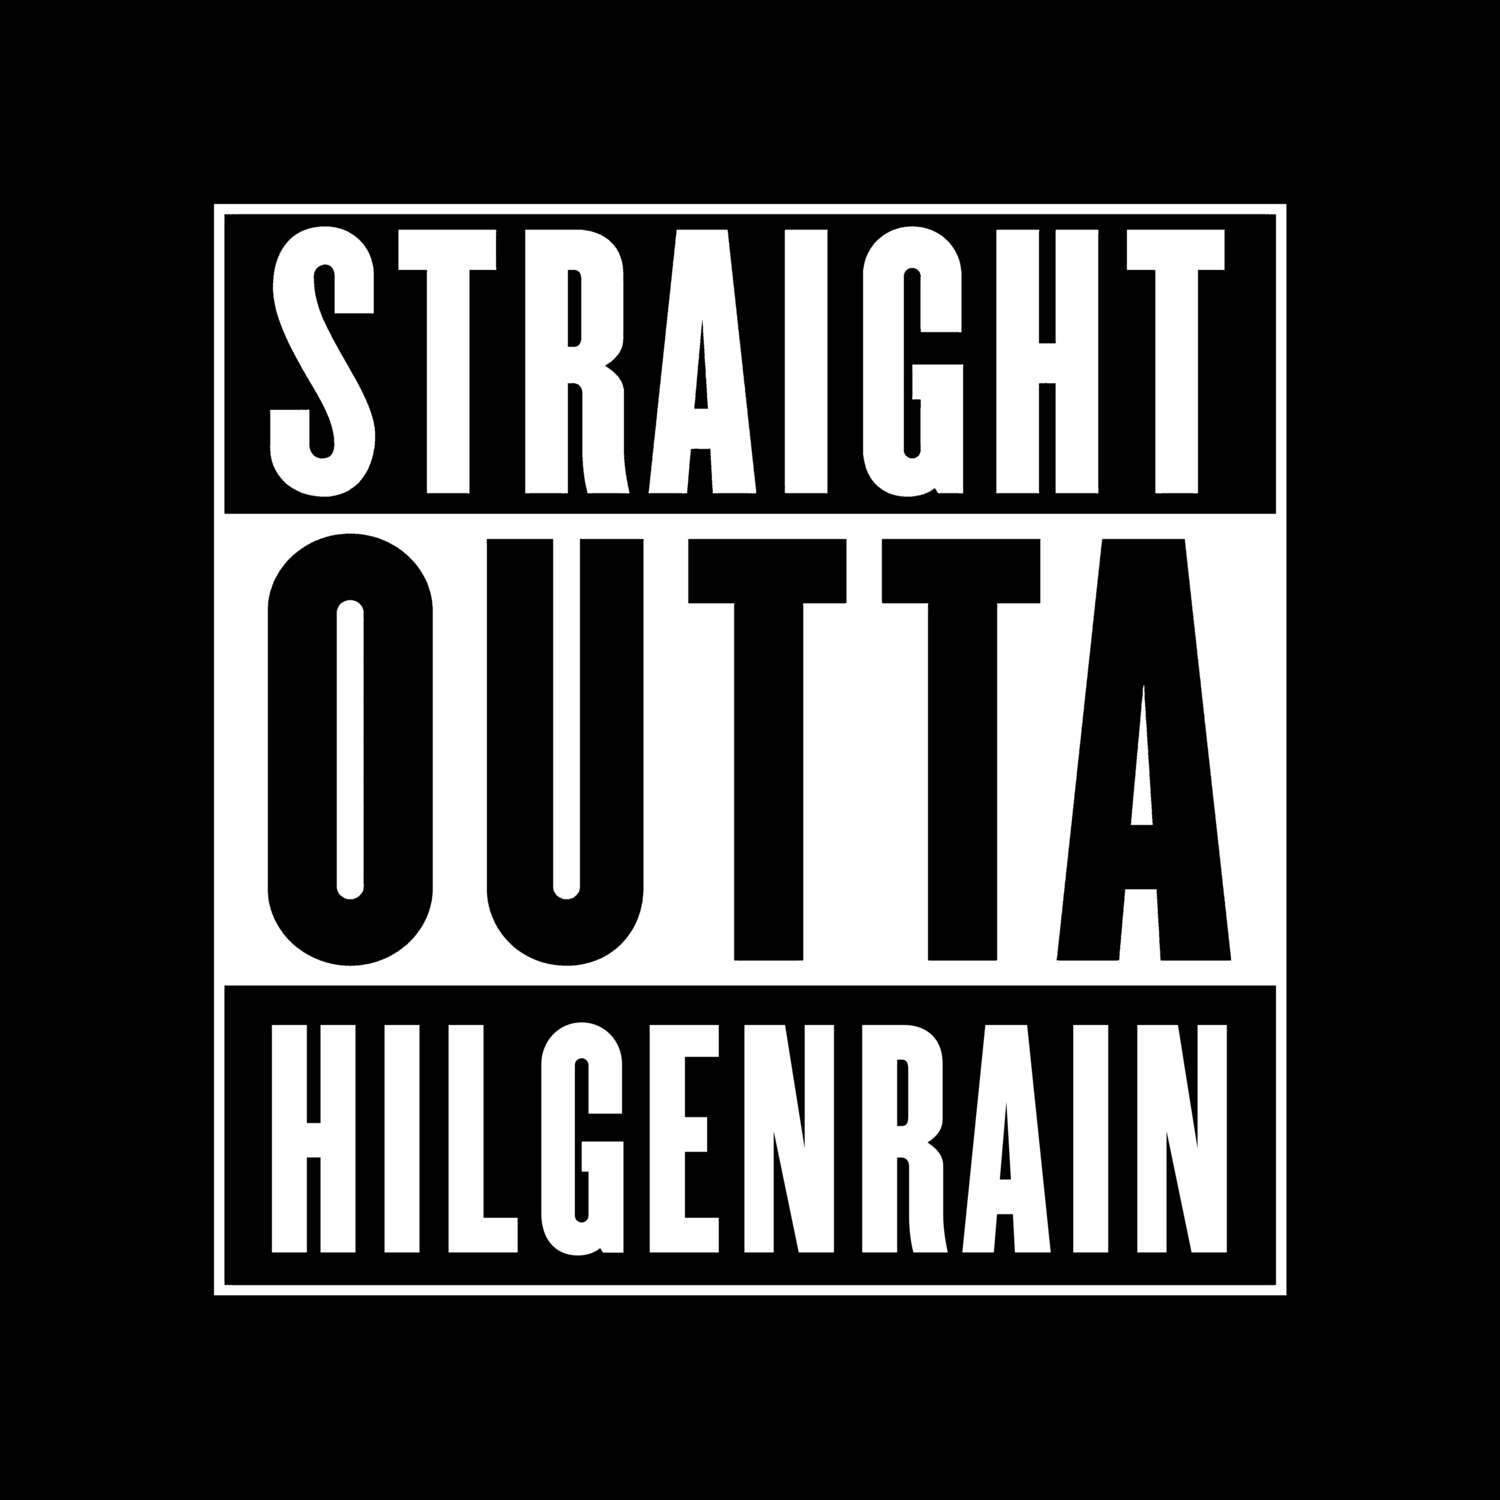 Hilgenrain T-Shirt »Straight Outta«